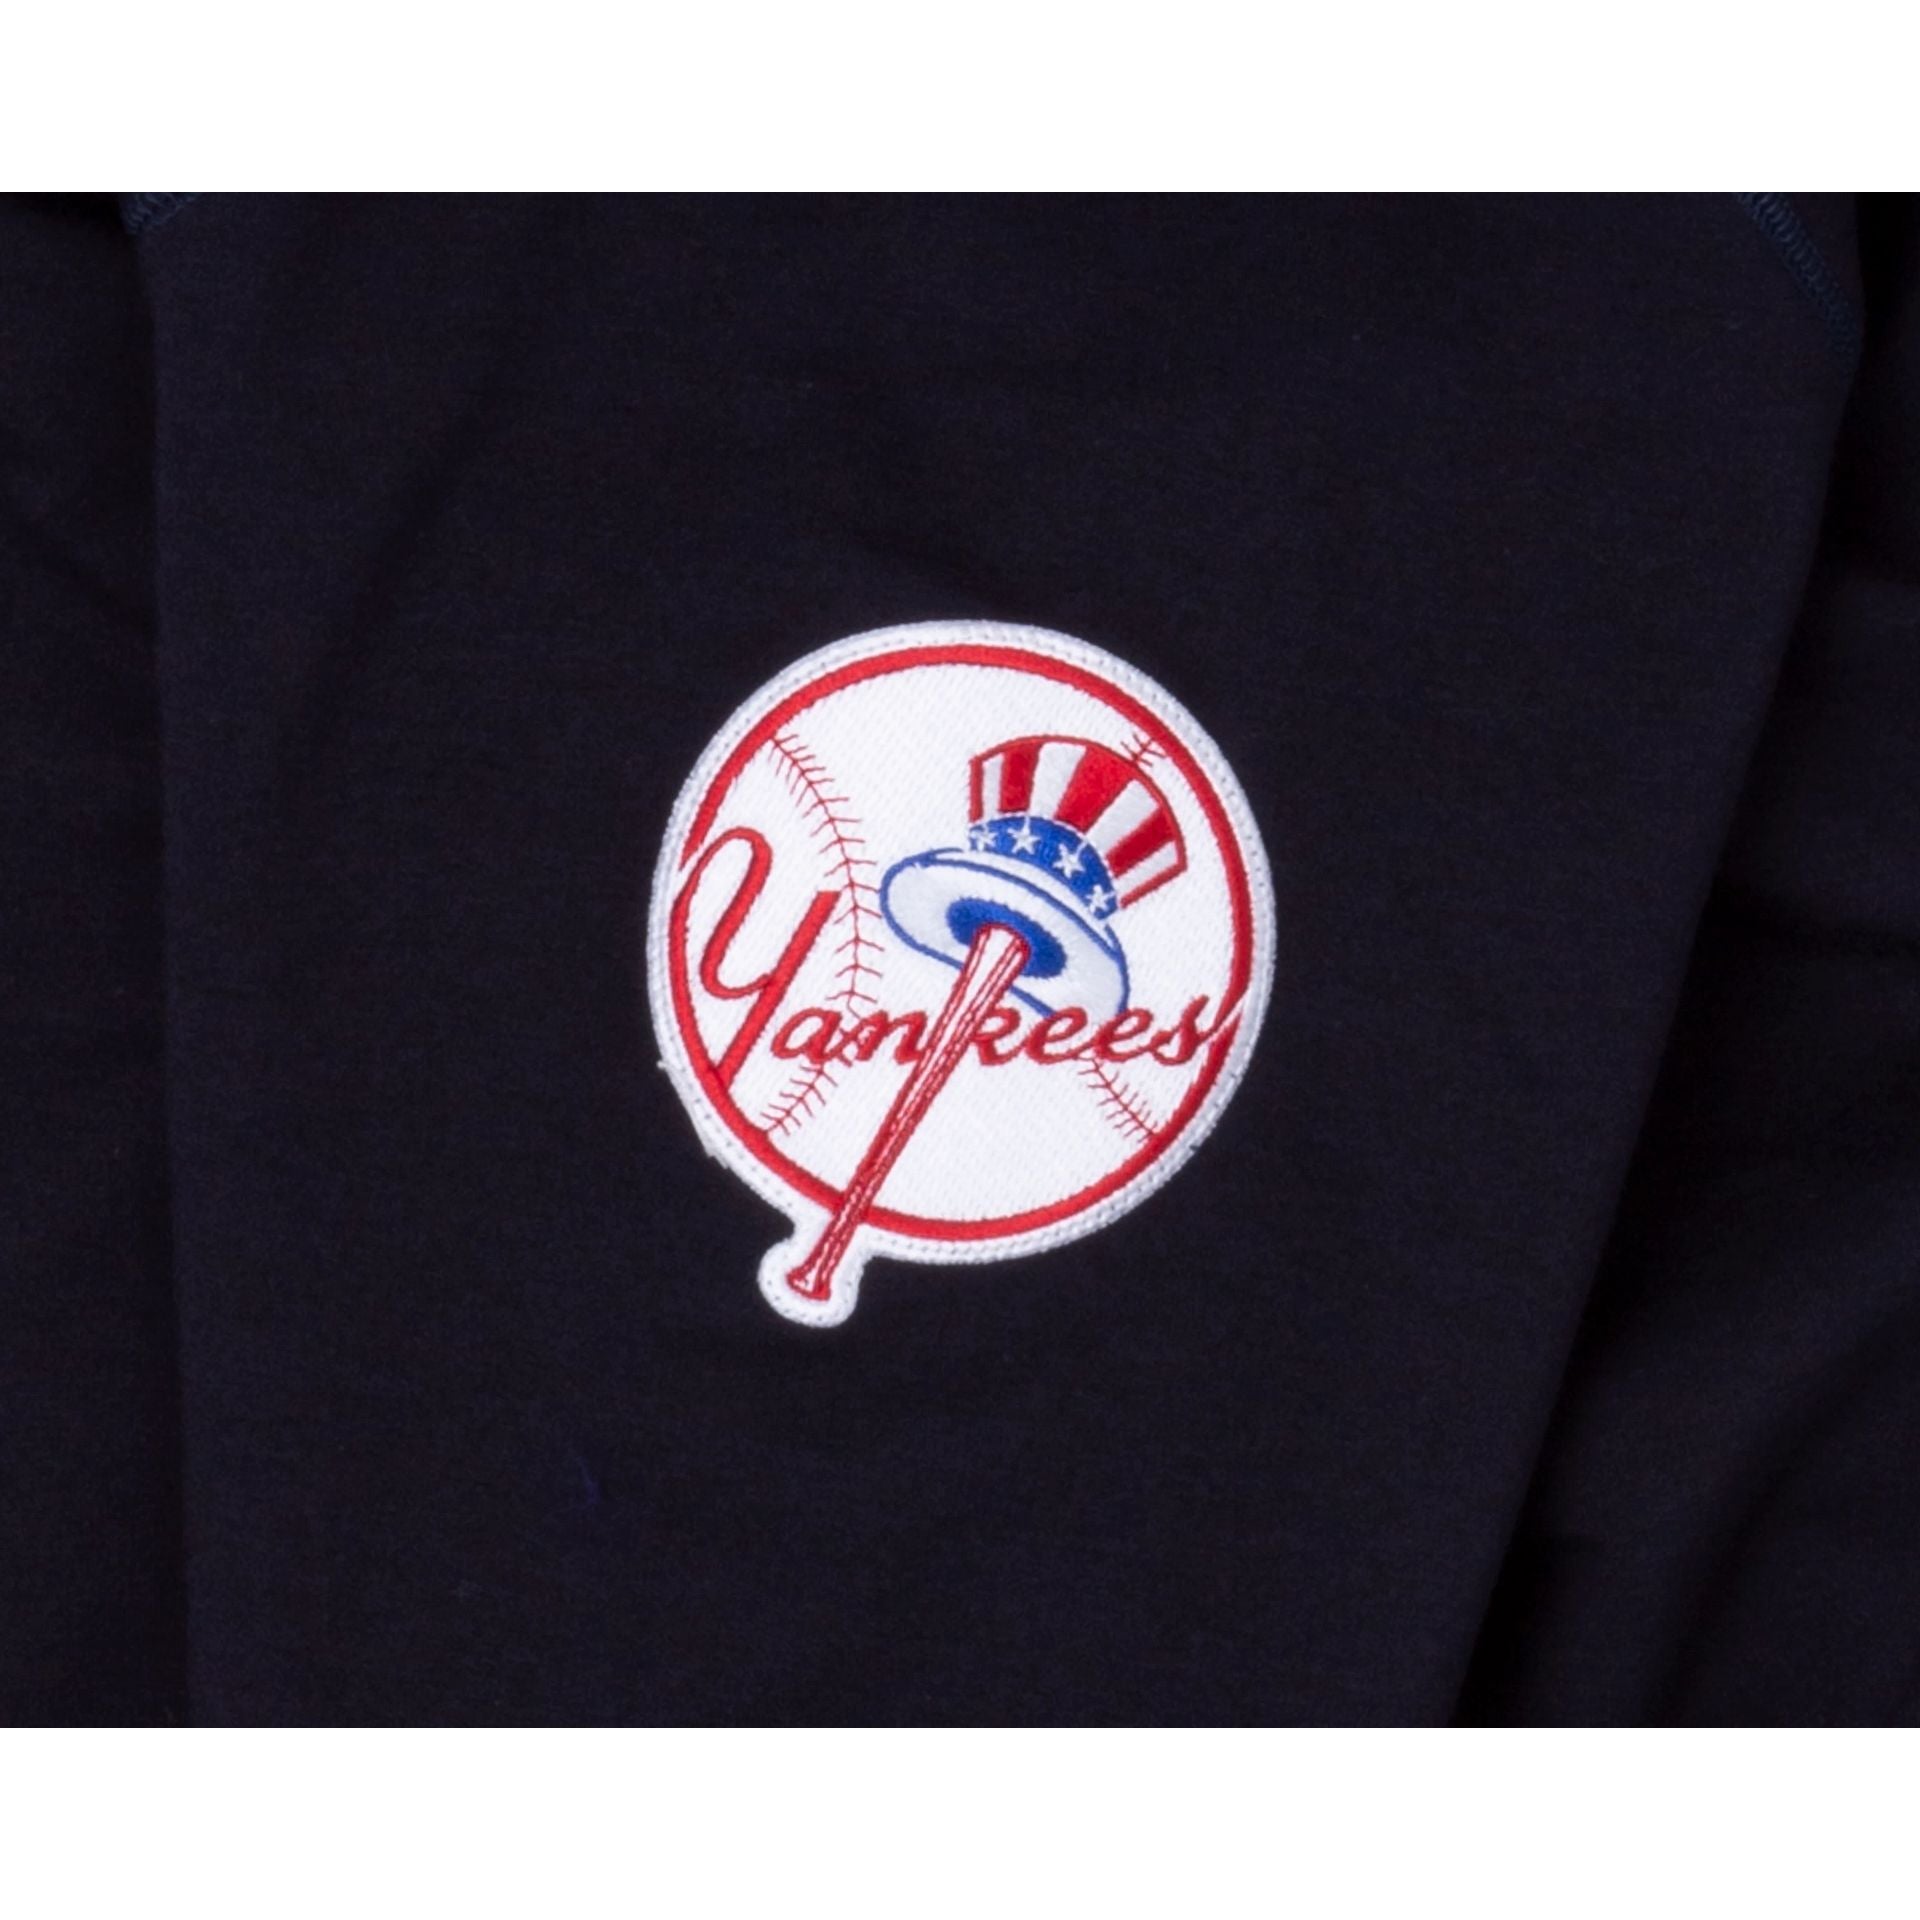 New York Yankees Logo Select Hoodie – New Era Cap